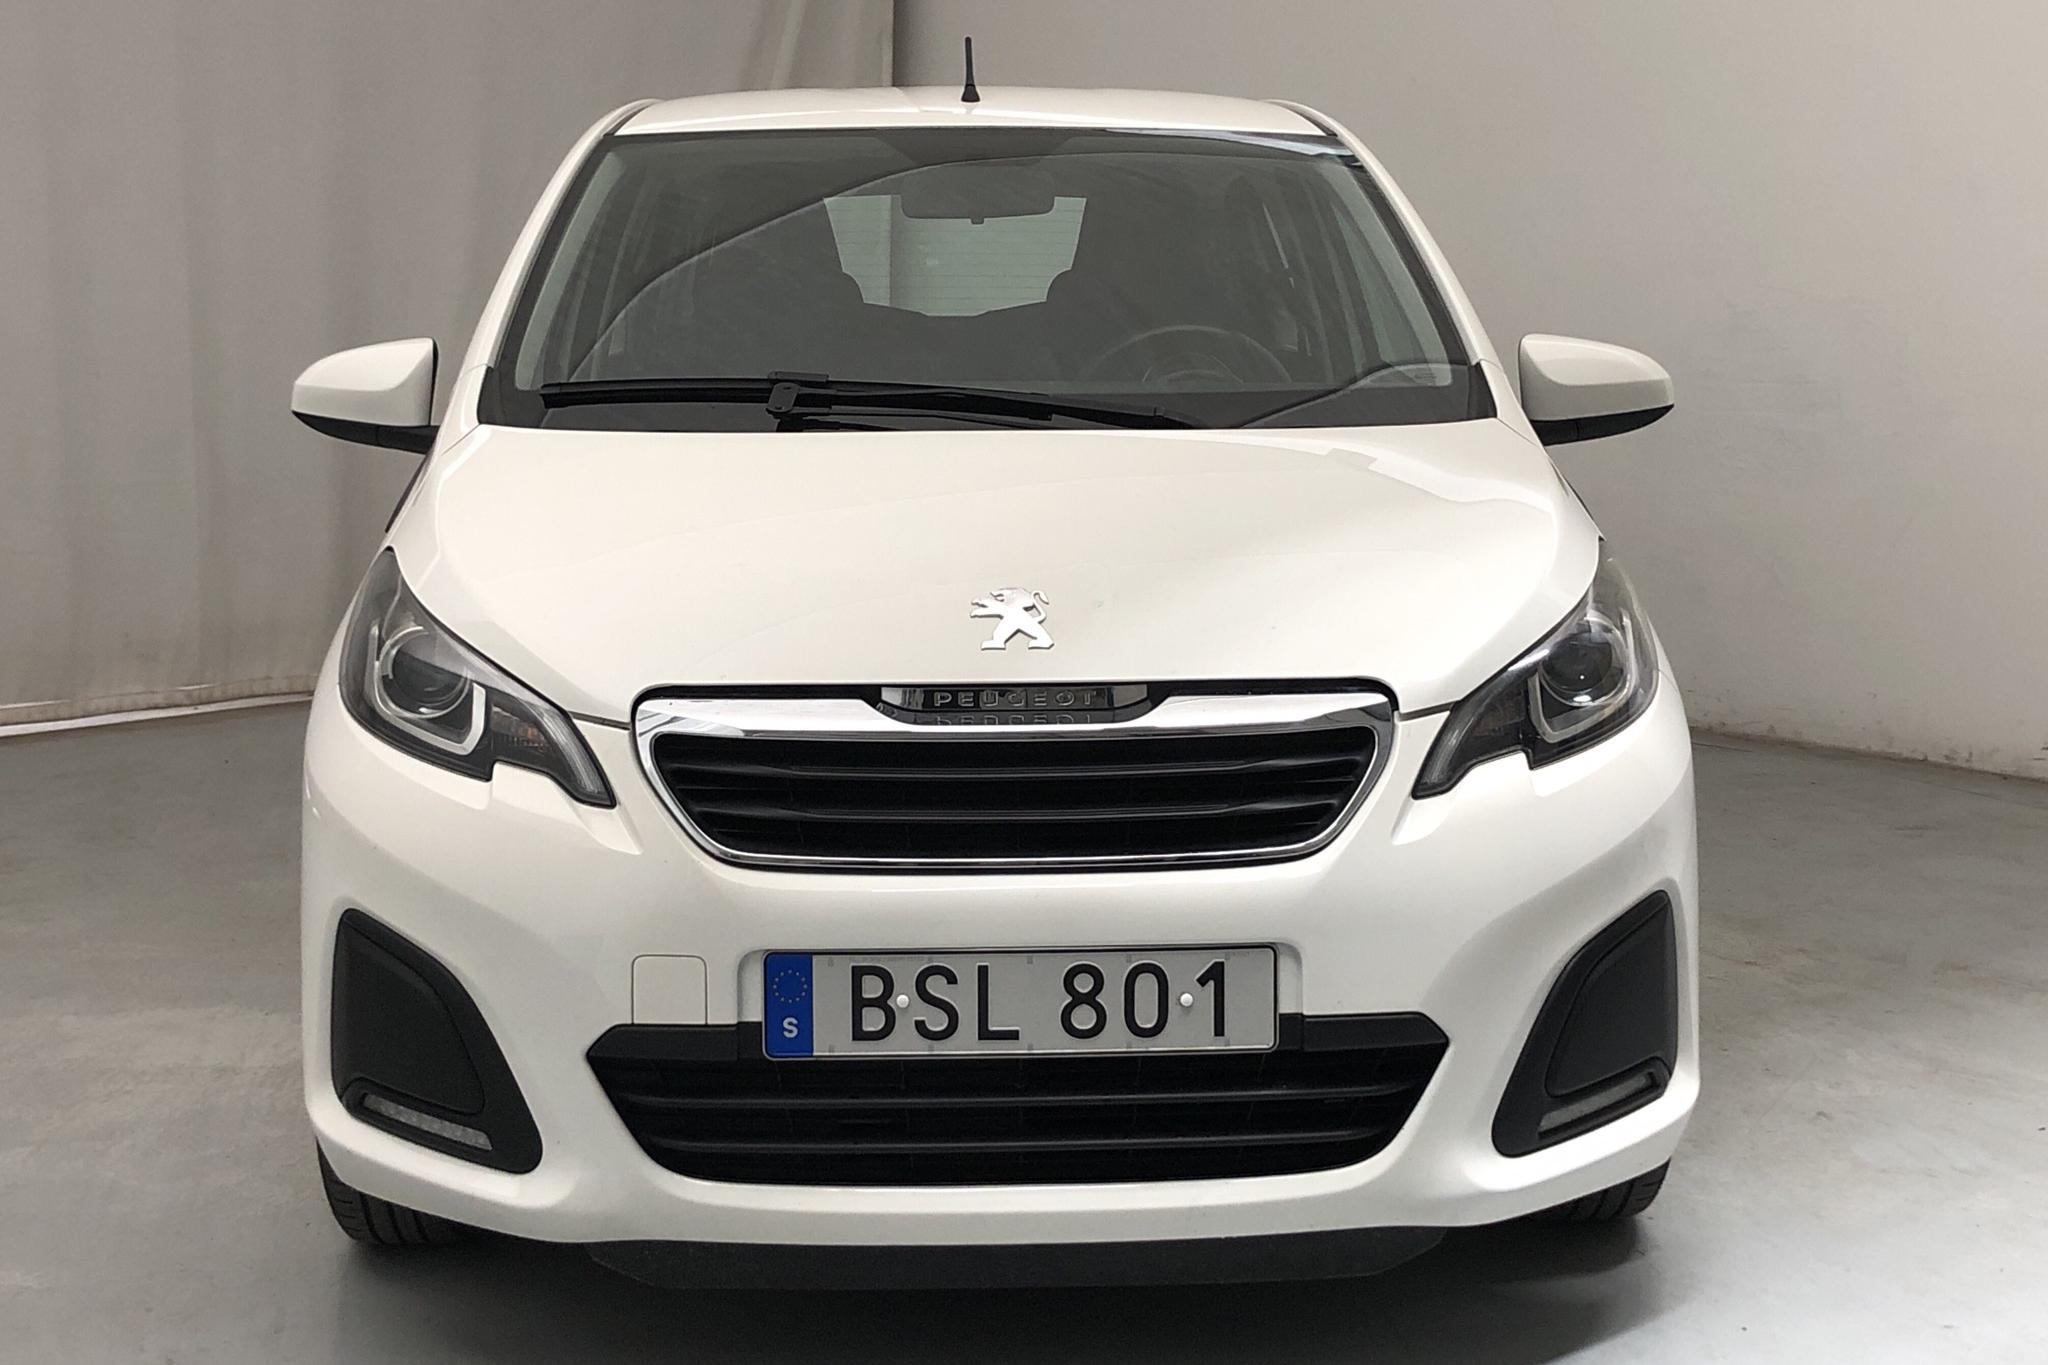 Peugeot 108 PureTech 5dr (68hk) - 50 920 km - Manual - white - 2015